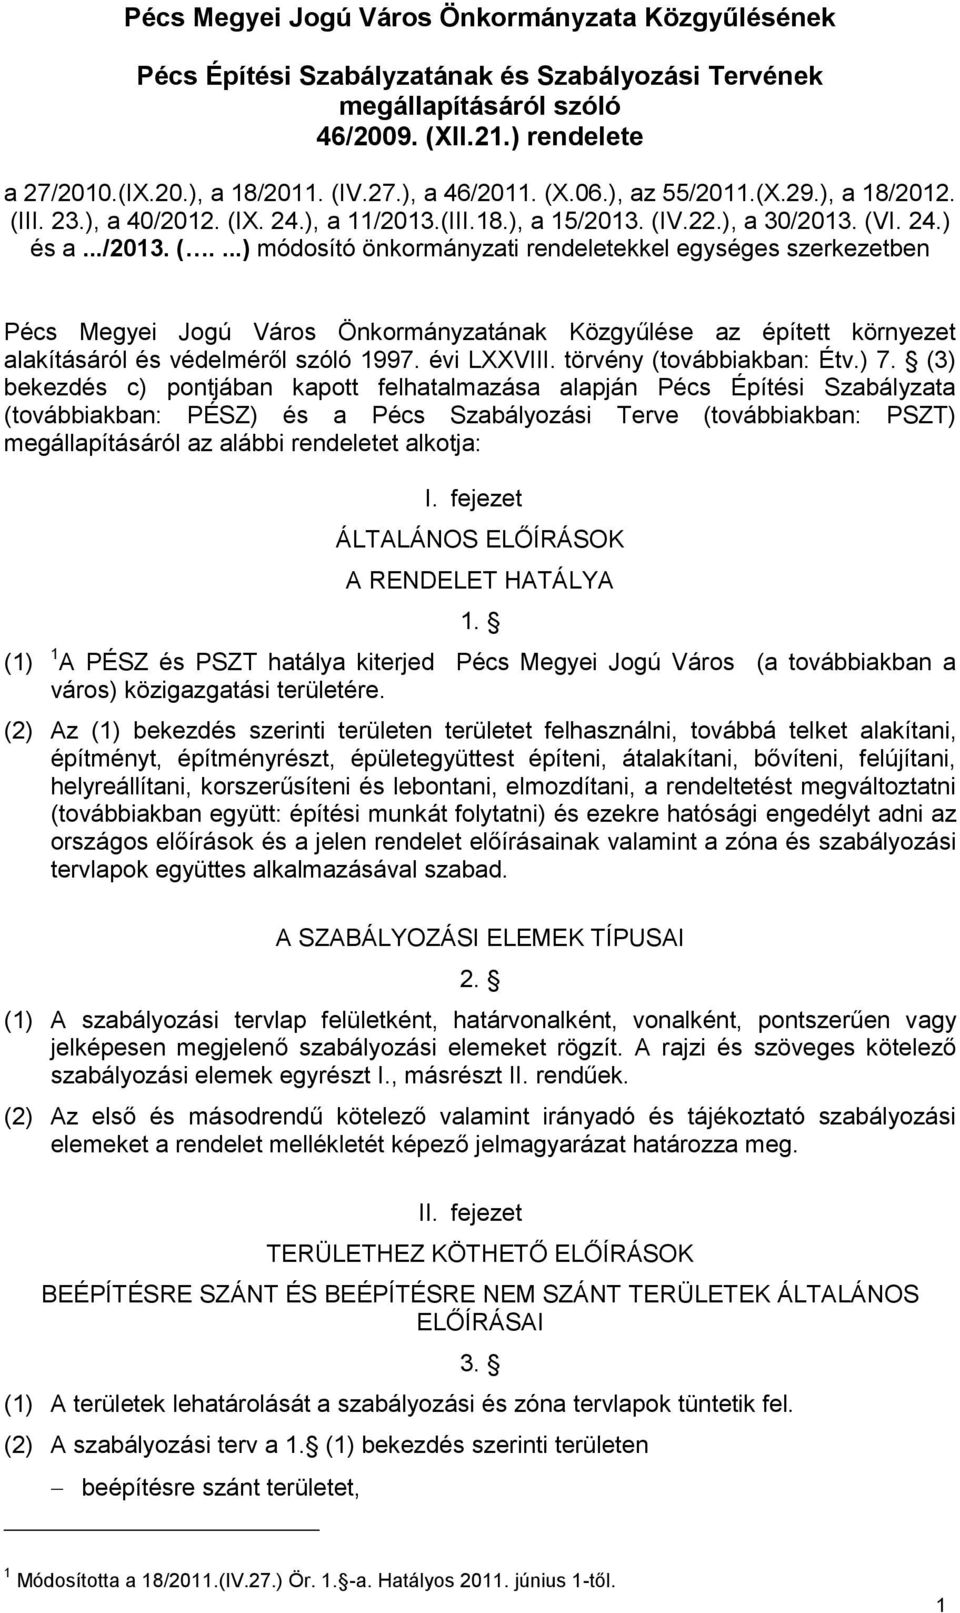 II. 23.), a 40/2012. (IX. 24.), a 11/2013.(III.18.), a 15/2013. (IV.22.), a 30/2013. (VI. 24.) és a.../2013. (....) módosító önkormányzati rendeletekkel egységes szerkezetben Pécs Megyei Jogú Város Önkormányzatának Közgyűlése az épített környezet alakításáról és védelméről szóló 1997.